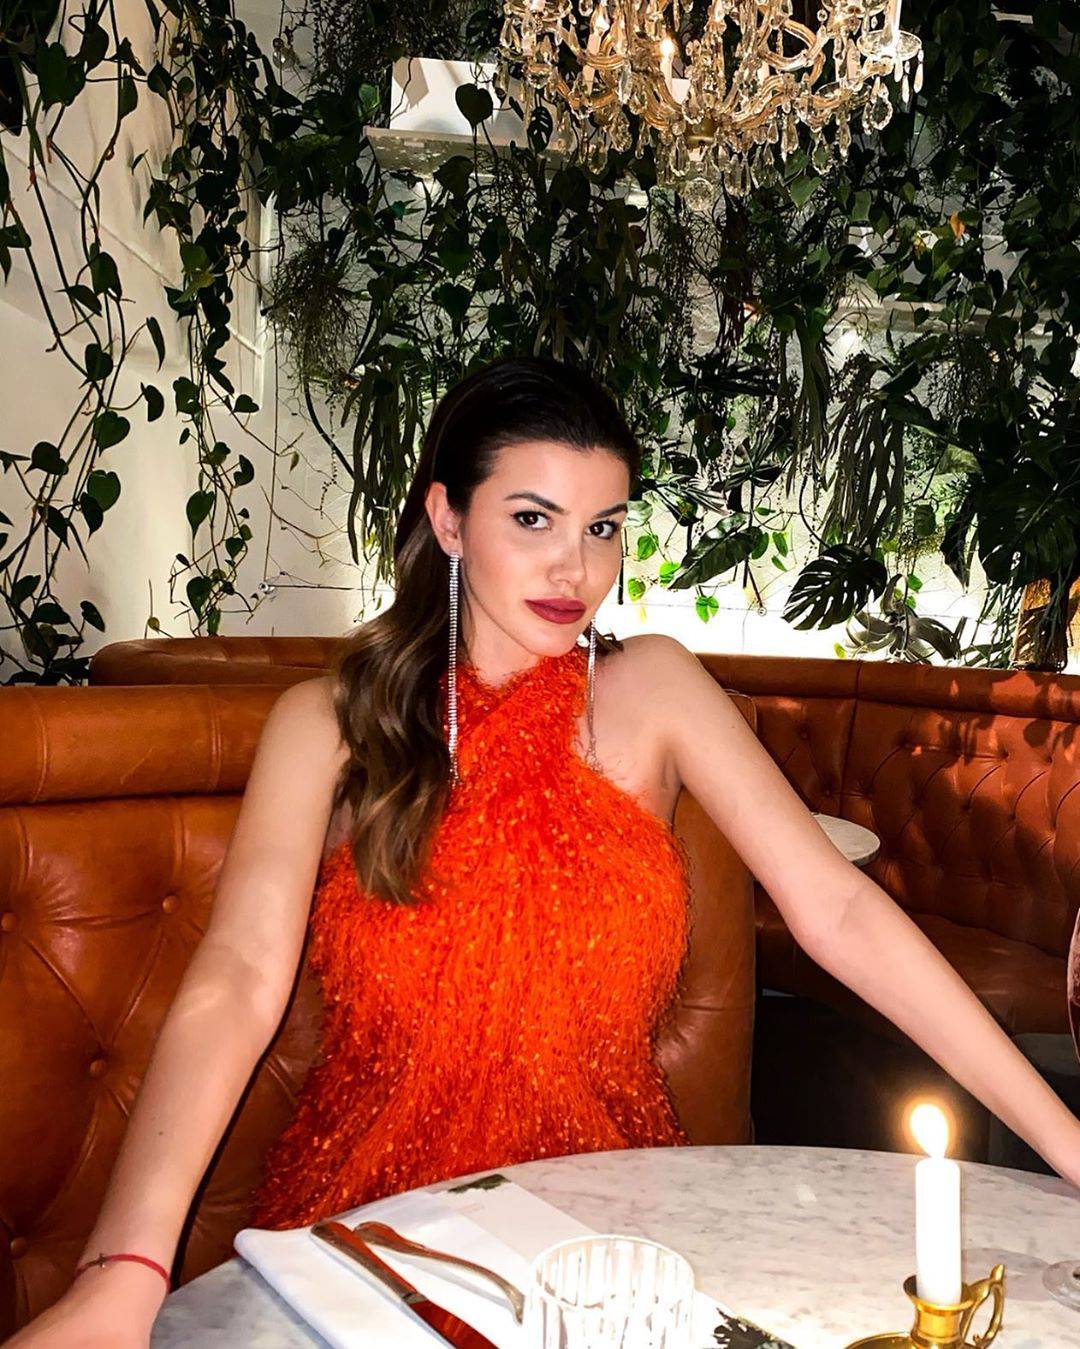 Zadranka Naiia konačno putuje na izbor za Miss Universe: 'Strah me da će mi pasti kruna'